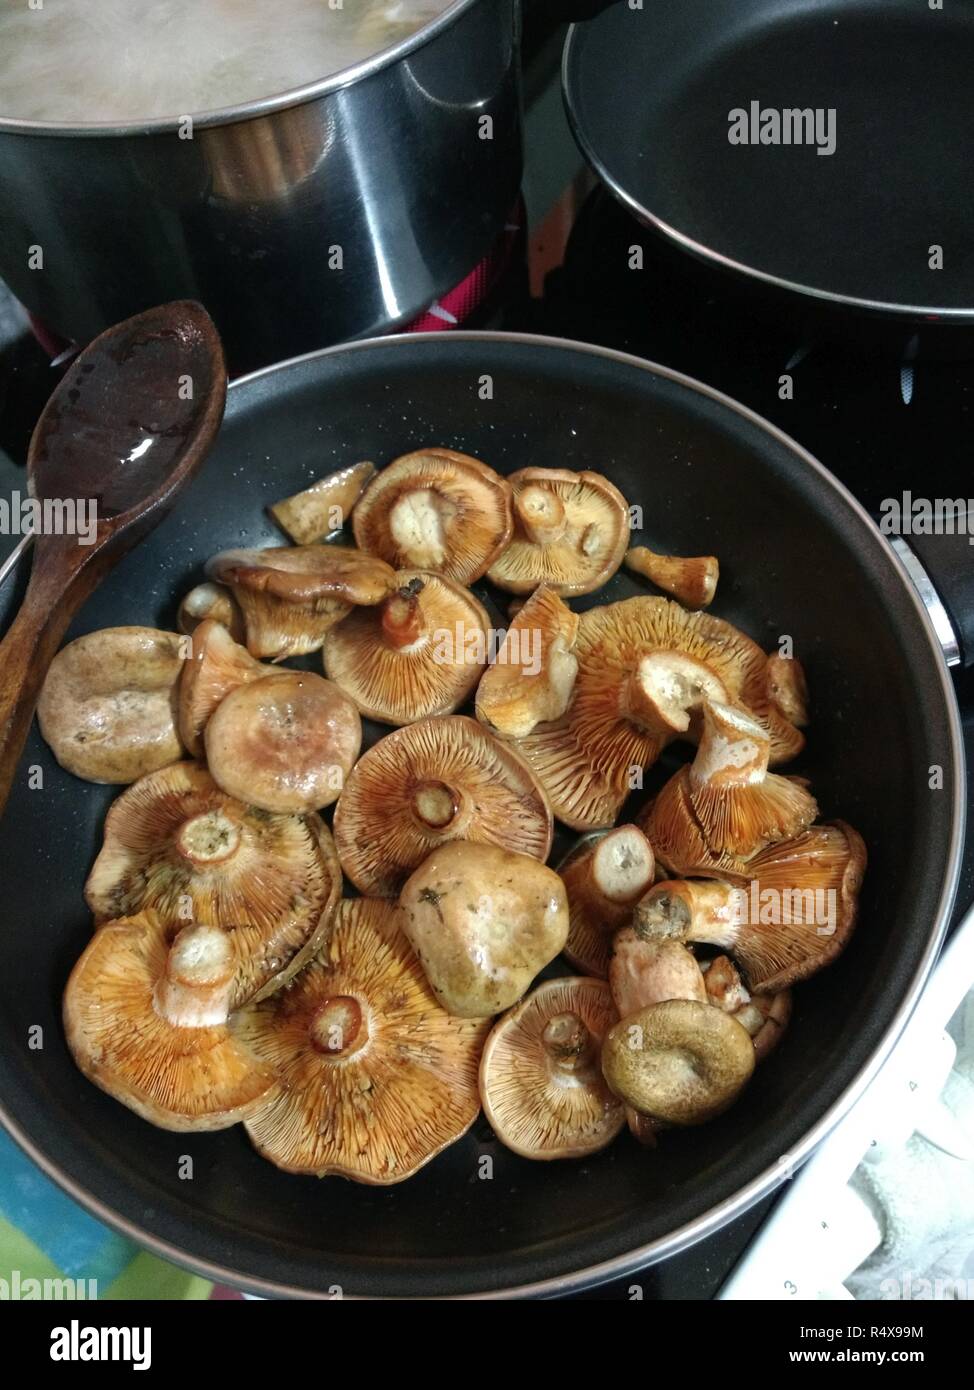 Some saffron milk cap mushrooms (Lactarius deliciosus), very similar to Lactarius sanguifluus and Lactarius deterrimus, cooked in an frying pan Stock Photo